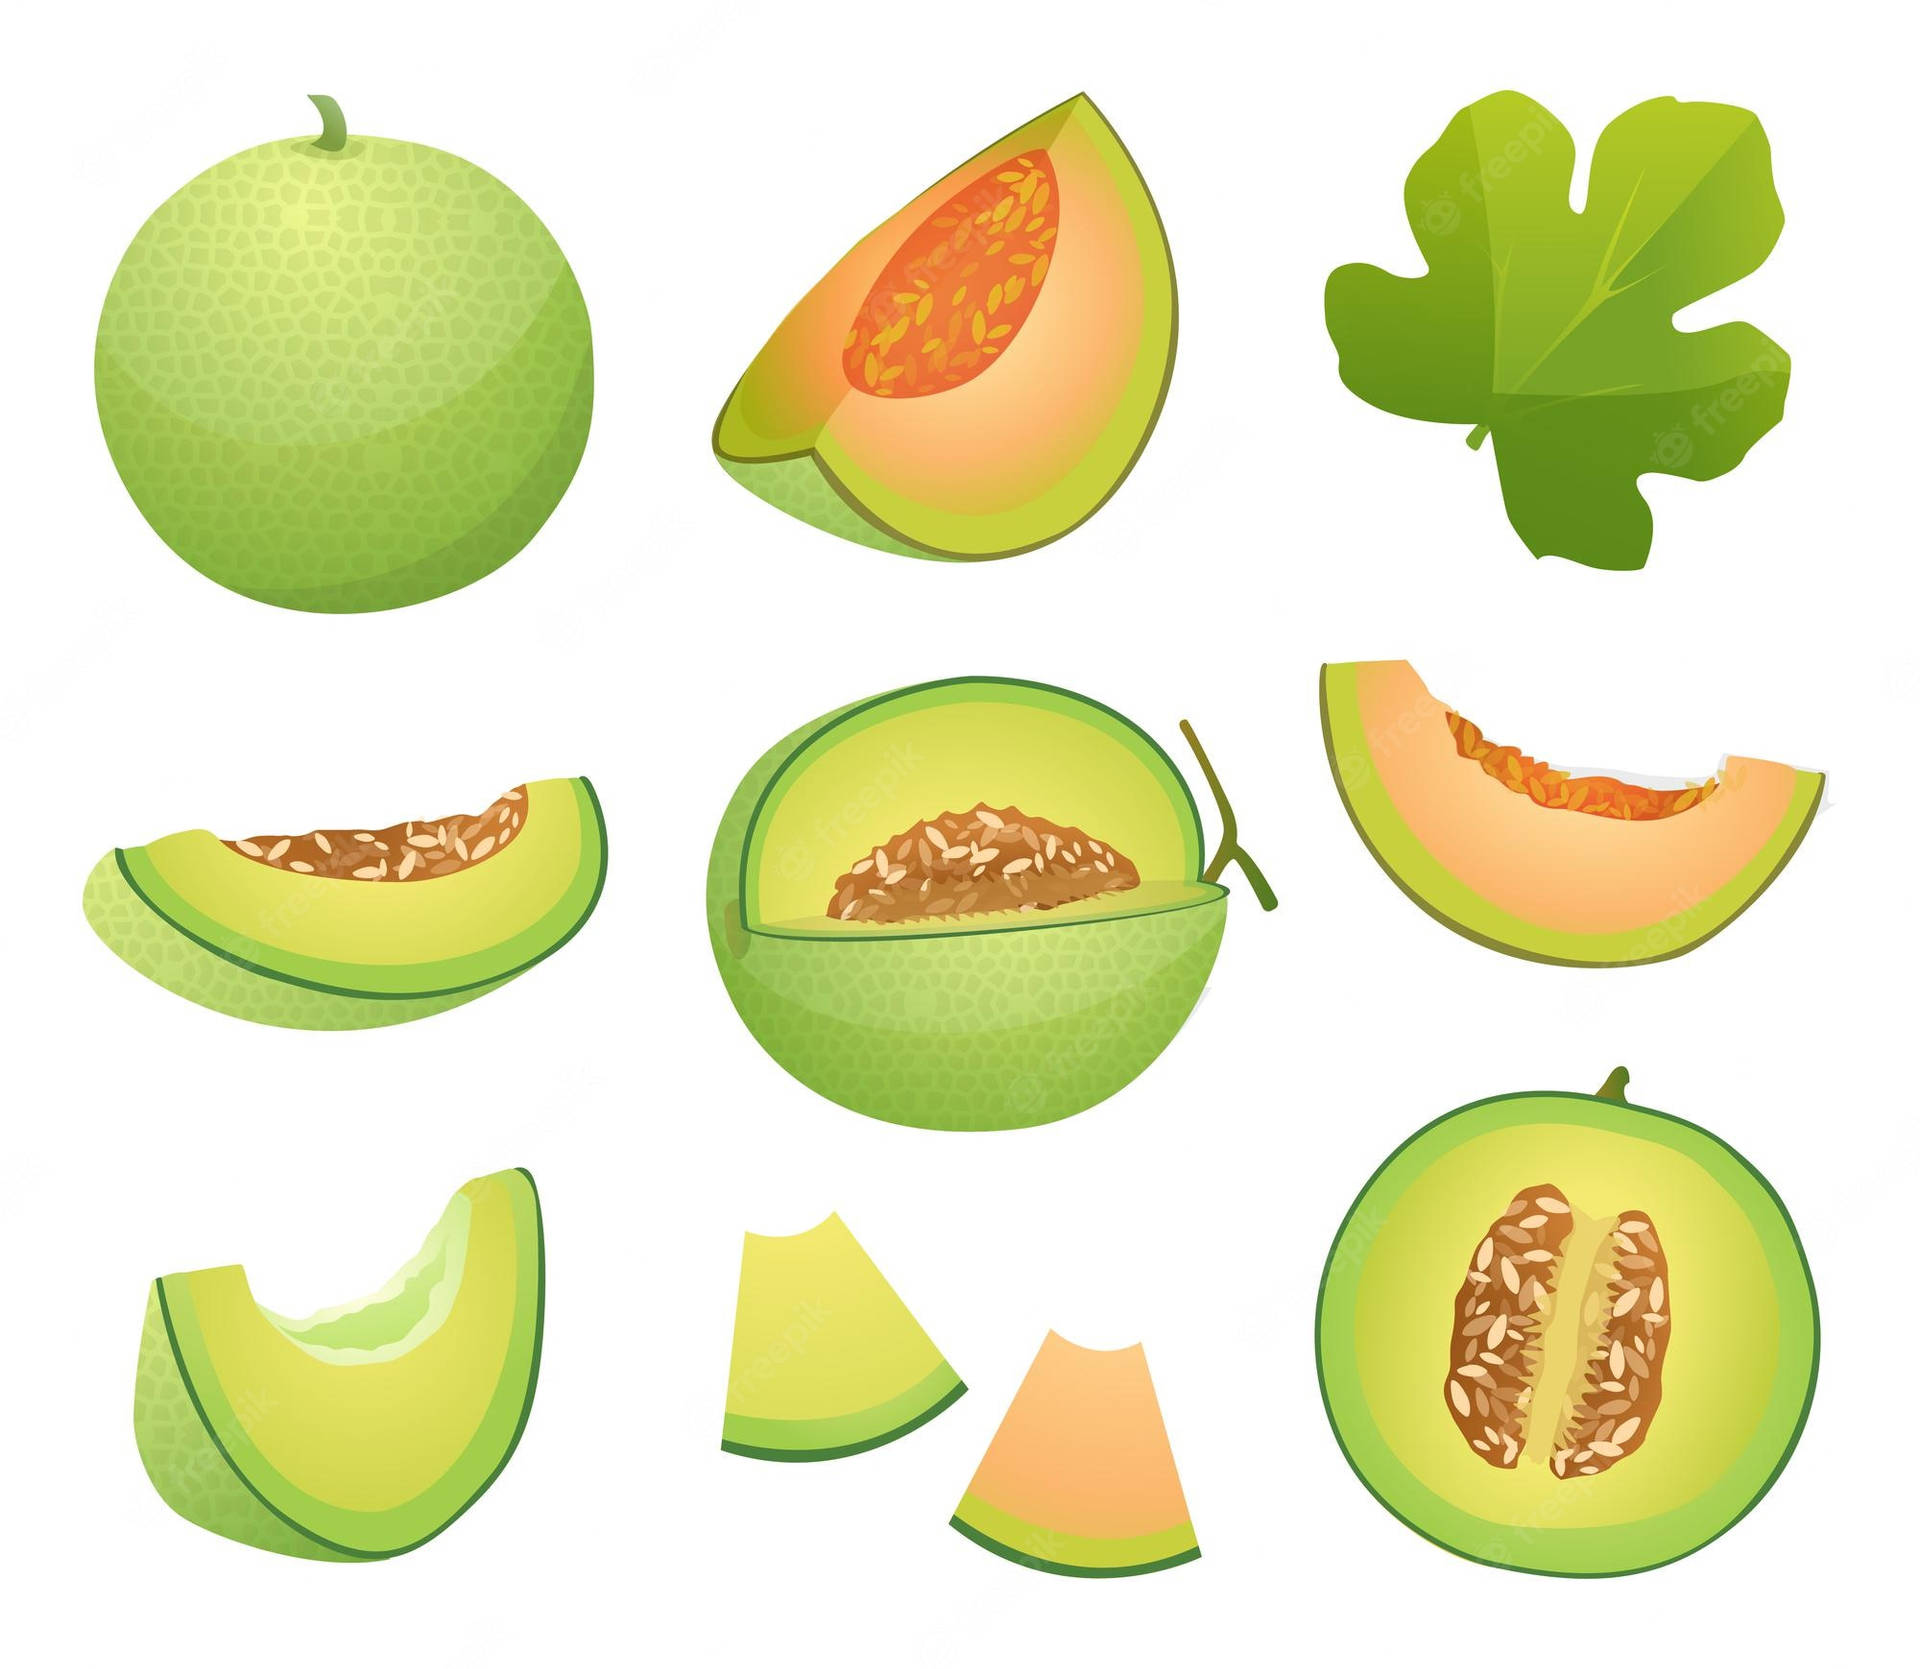 Honeydew Melon Illustration Wallpaper